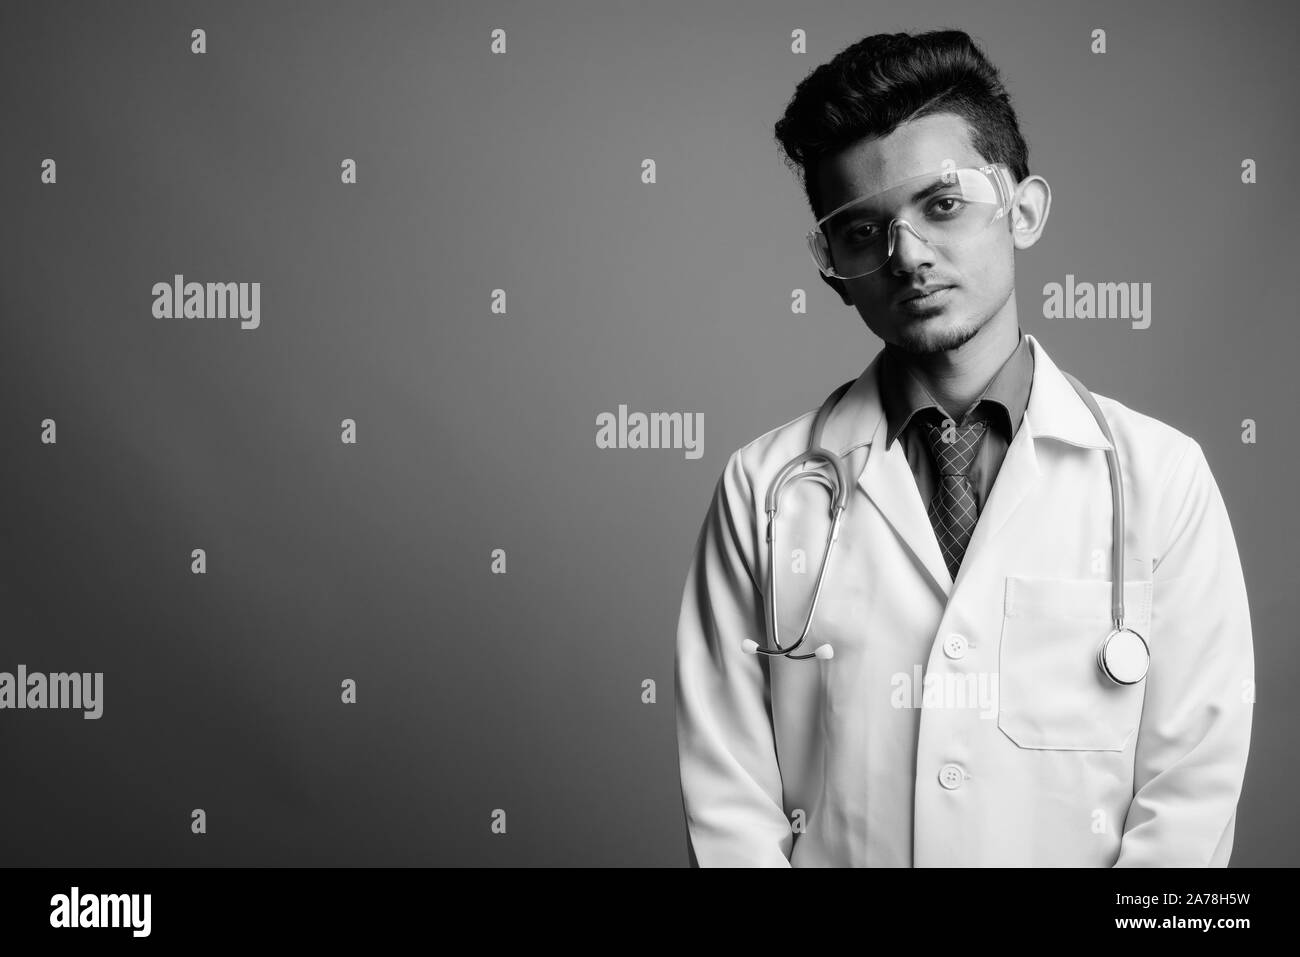 Jeune Indien médecin homme portant des lunettes de protection contre l'arrière-plan gris Banque D'Images